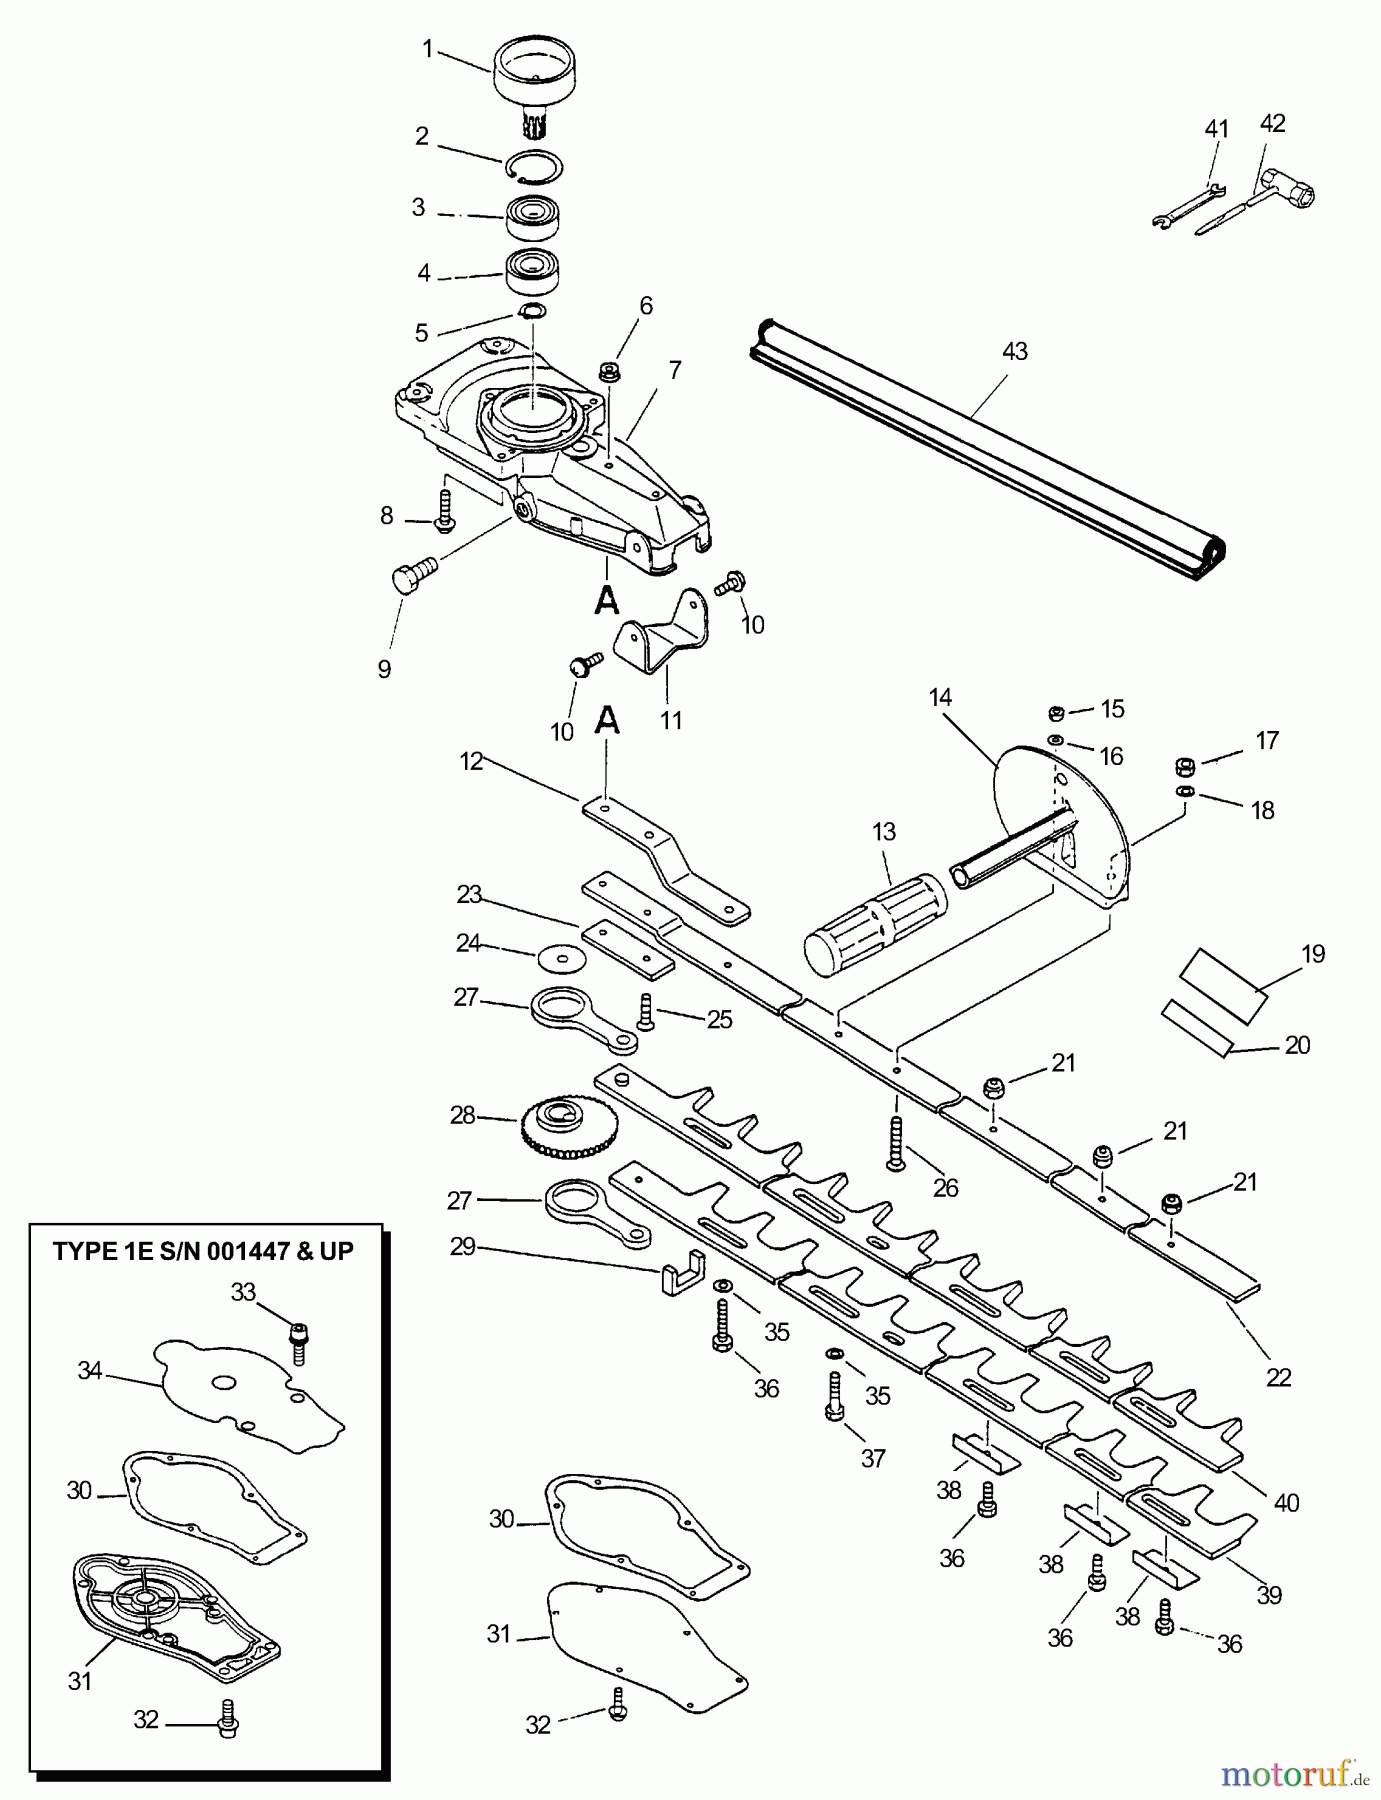  Echo Heckenscheren HC-2000 - Echo Hedge Trimmer (Type 1E) Gear Case, Blades, Handle